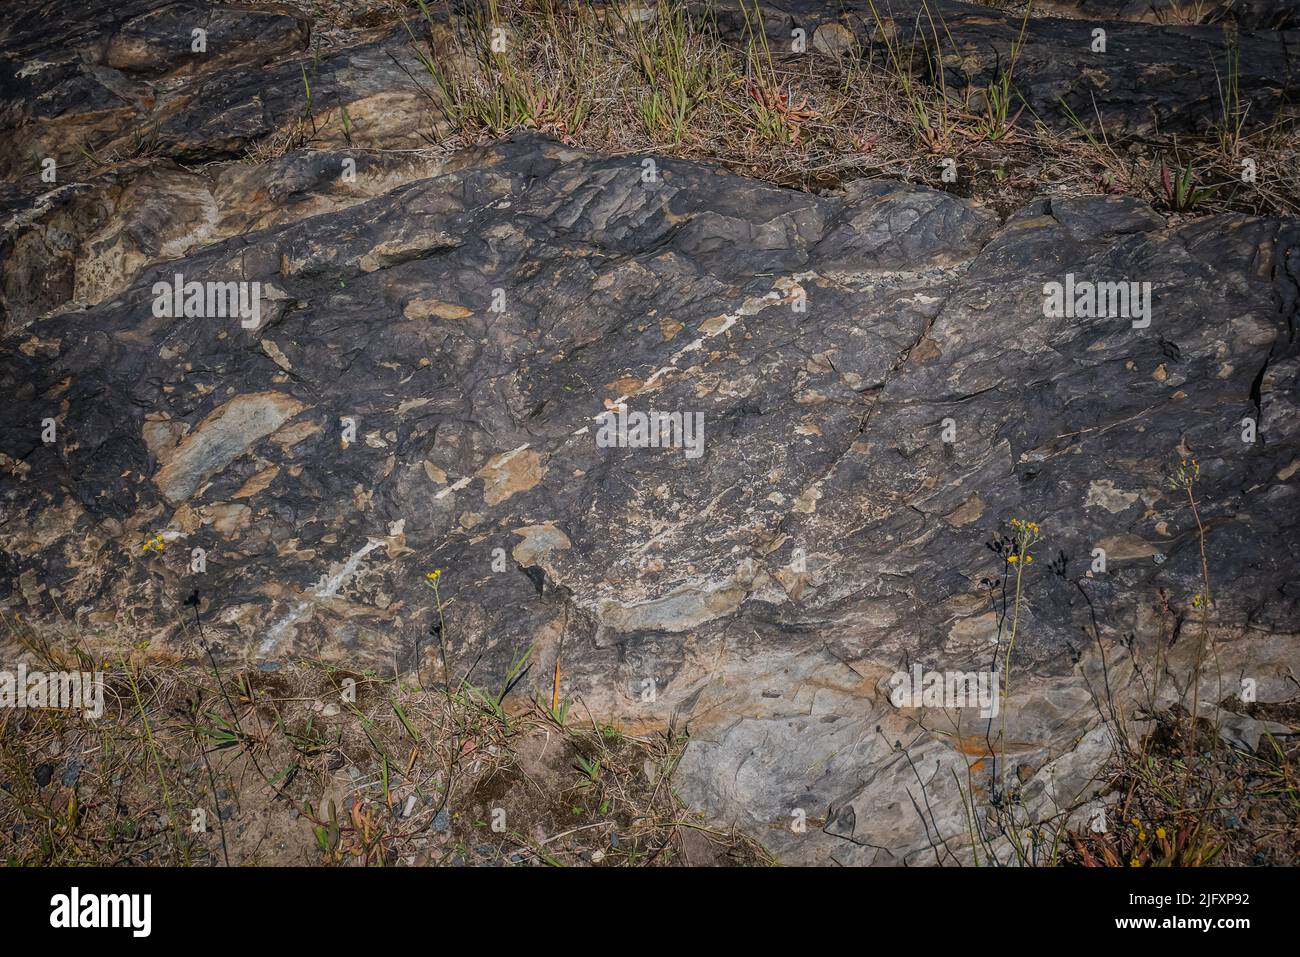 Rochers noirs à Sudbury, Ontario, Canada. Les roches ont été tachées noires par les premières émissions de la fonderie, qui contenaient du dioxyde de soufre et des particules métalliques Banque D'Images